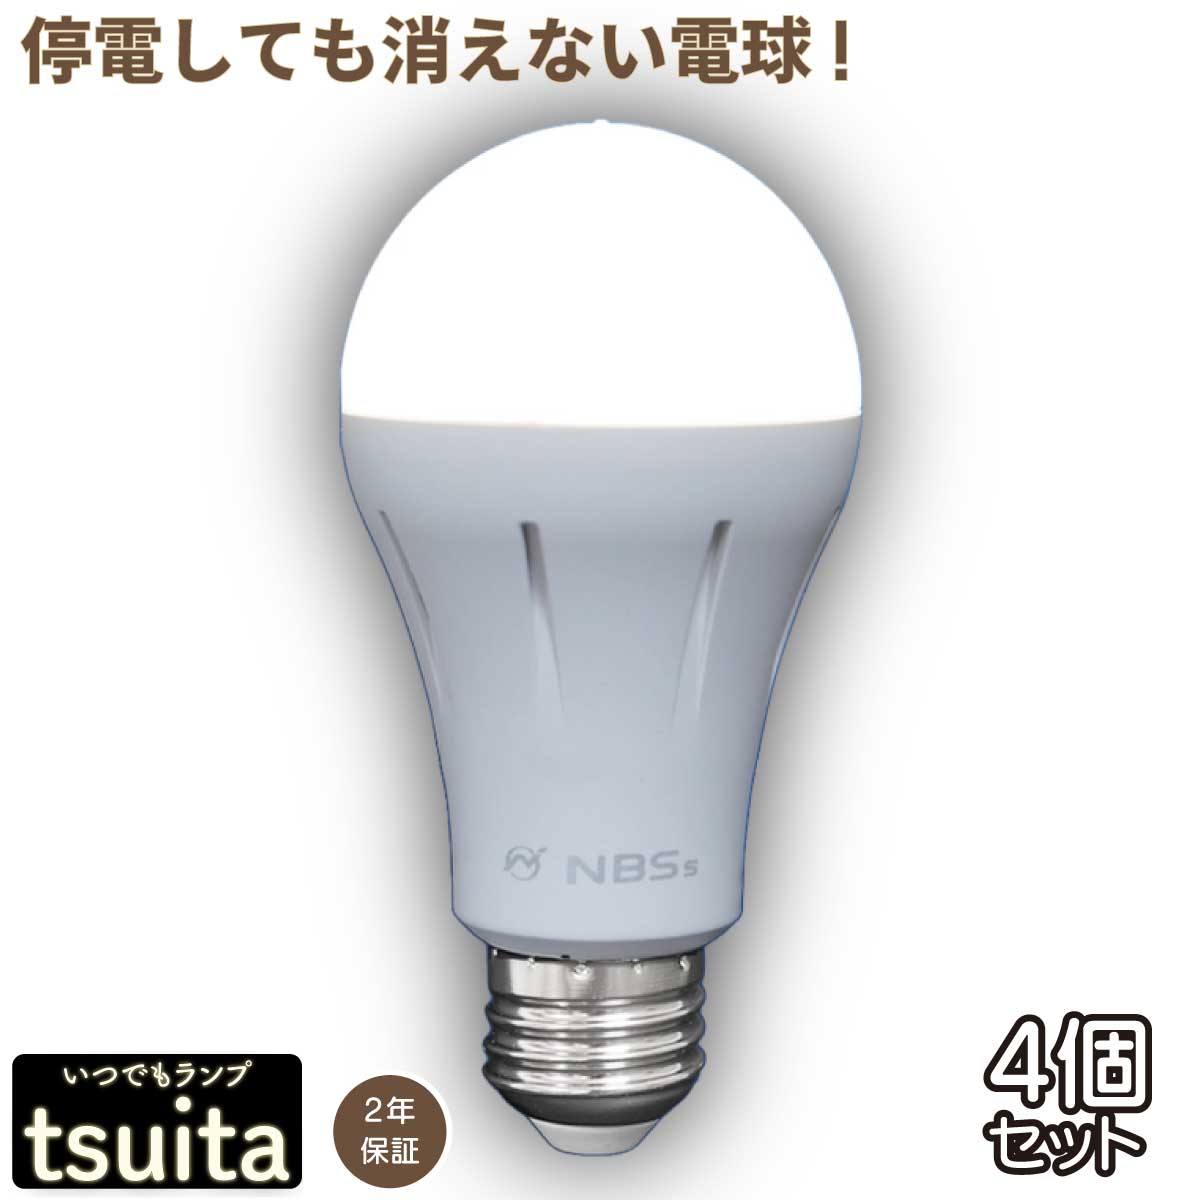  いつでもランプ tsuita ツイタ 昼白色・電球色 停電 避難 光 手持ち LED スイッチ 内蔵バッテリー 防災電球 tuita 日常から防災につながるフェイズフリー